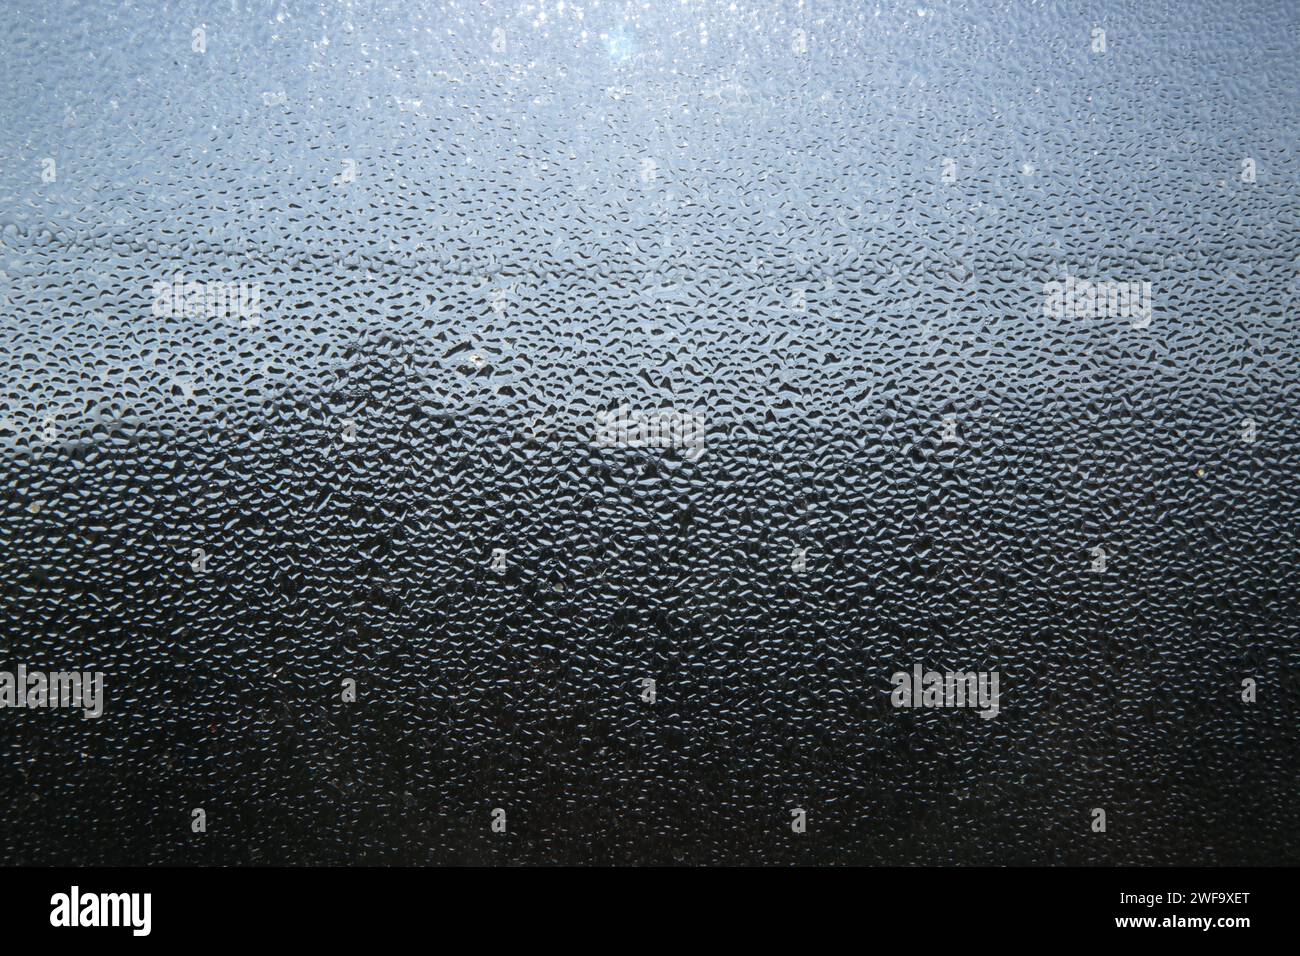 Gros plan de la condensation d'eau lourde sur la vitre pendant une matinée d'hiver. Banque D'Images